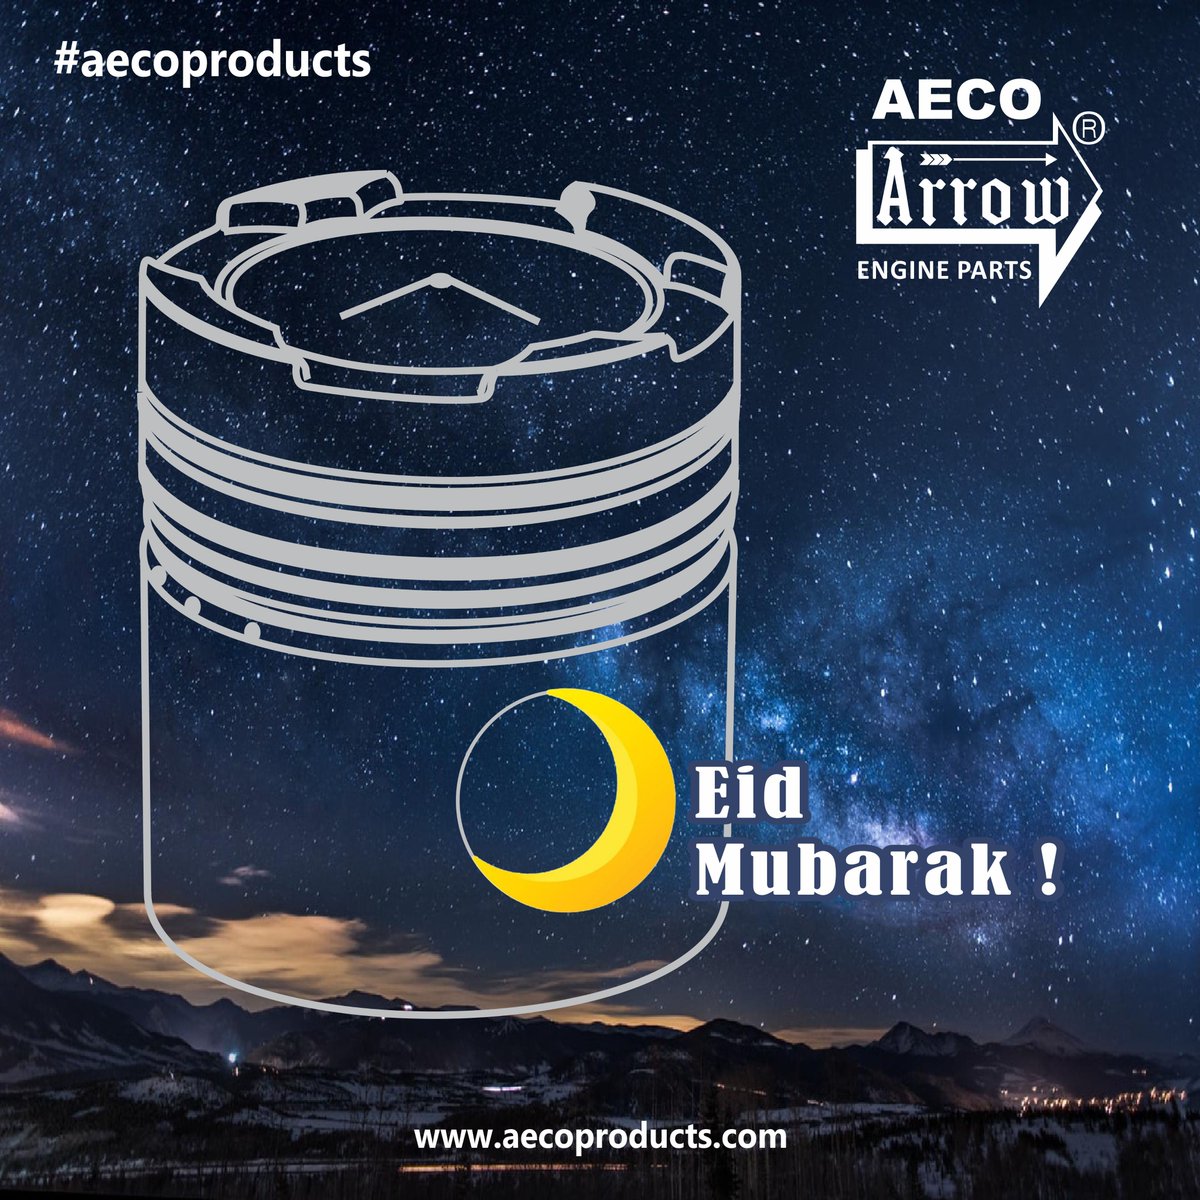 Eid Mubarak!
.
.
#Eid2024 #EidUlFitr #ArrowEngineParts #AECO #EngineParts #EnginePistons #Piston #AECOProducts #PistonRing #Eid_Mubarak